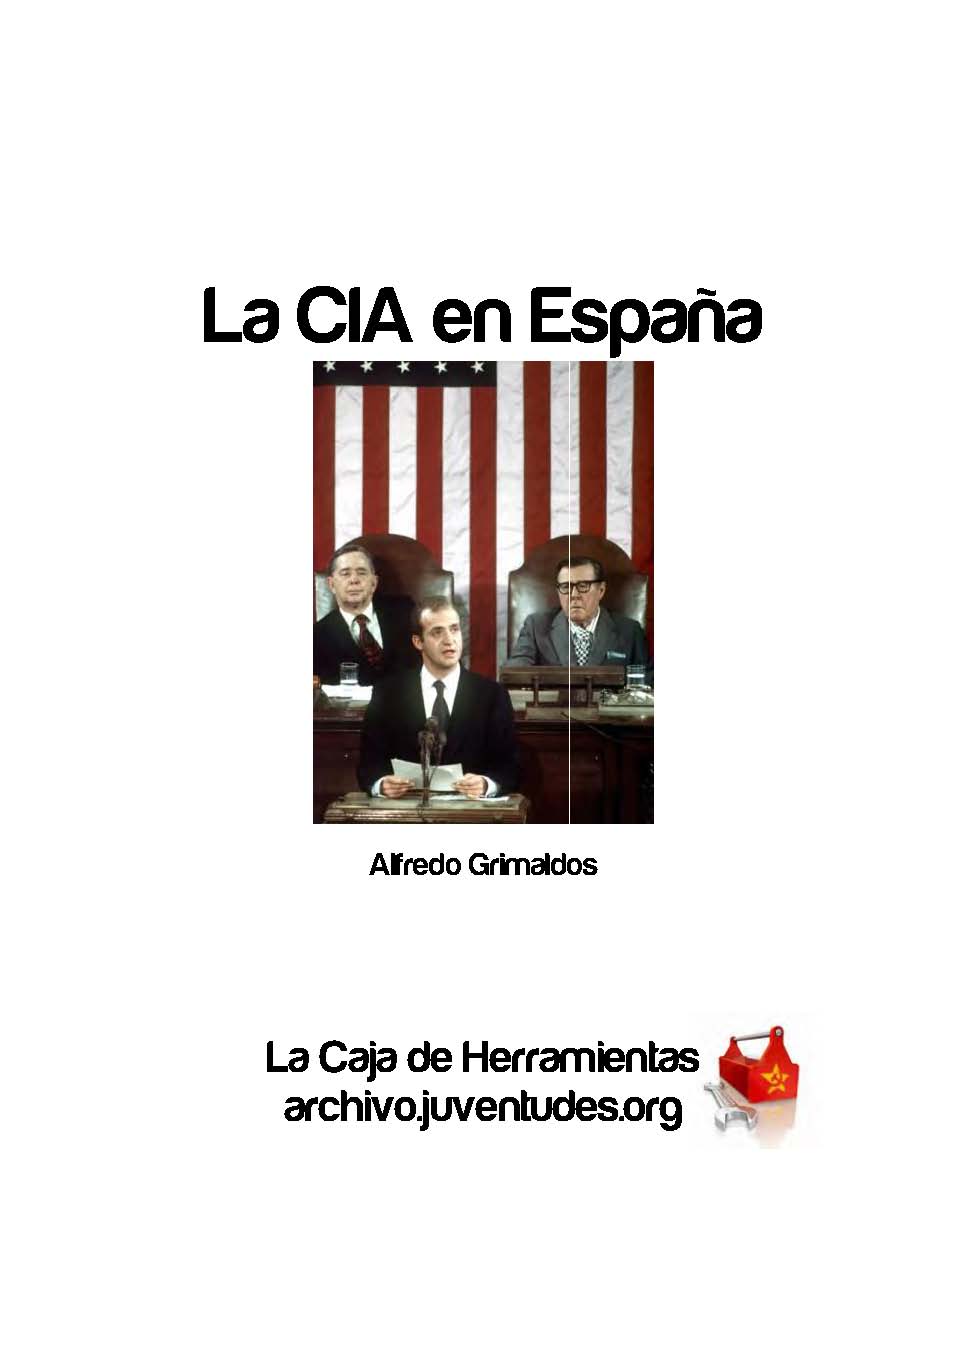 AGE - Archivo, Guerra y Exilio (Contacto: age@derechos.org) : “La CIA en España”: libro de Alfredo Grimaldos